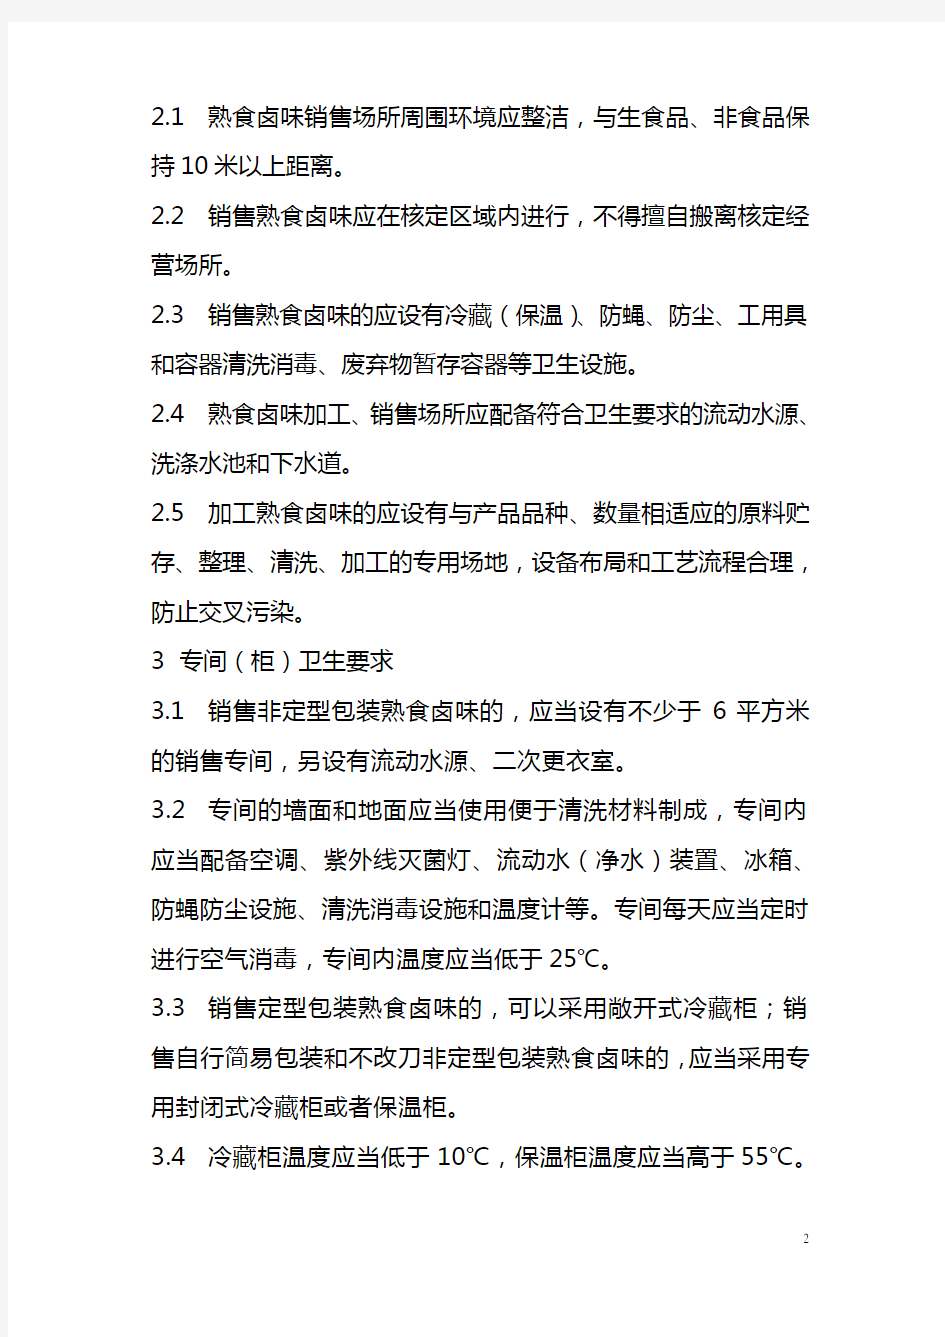 45-上海市超市熟食卤味销售和加工卫生操作规范(试行)